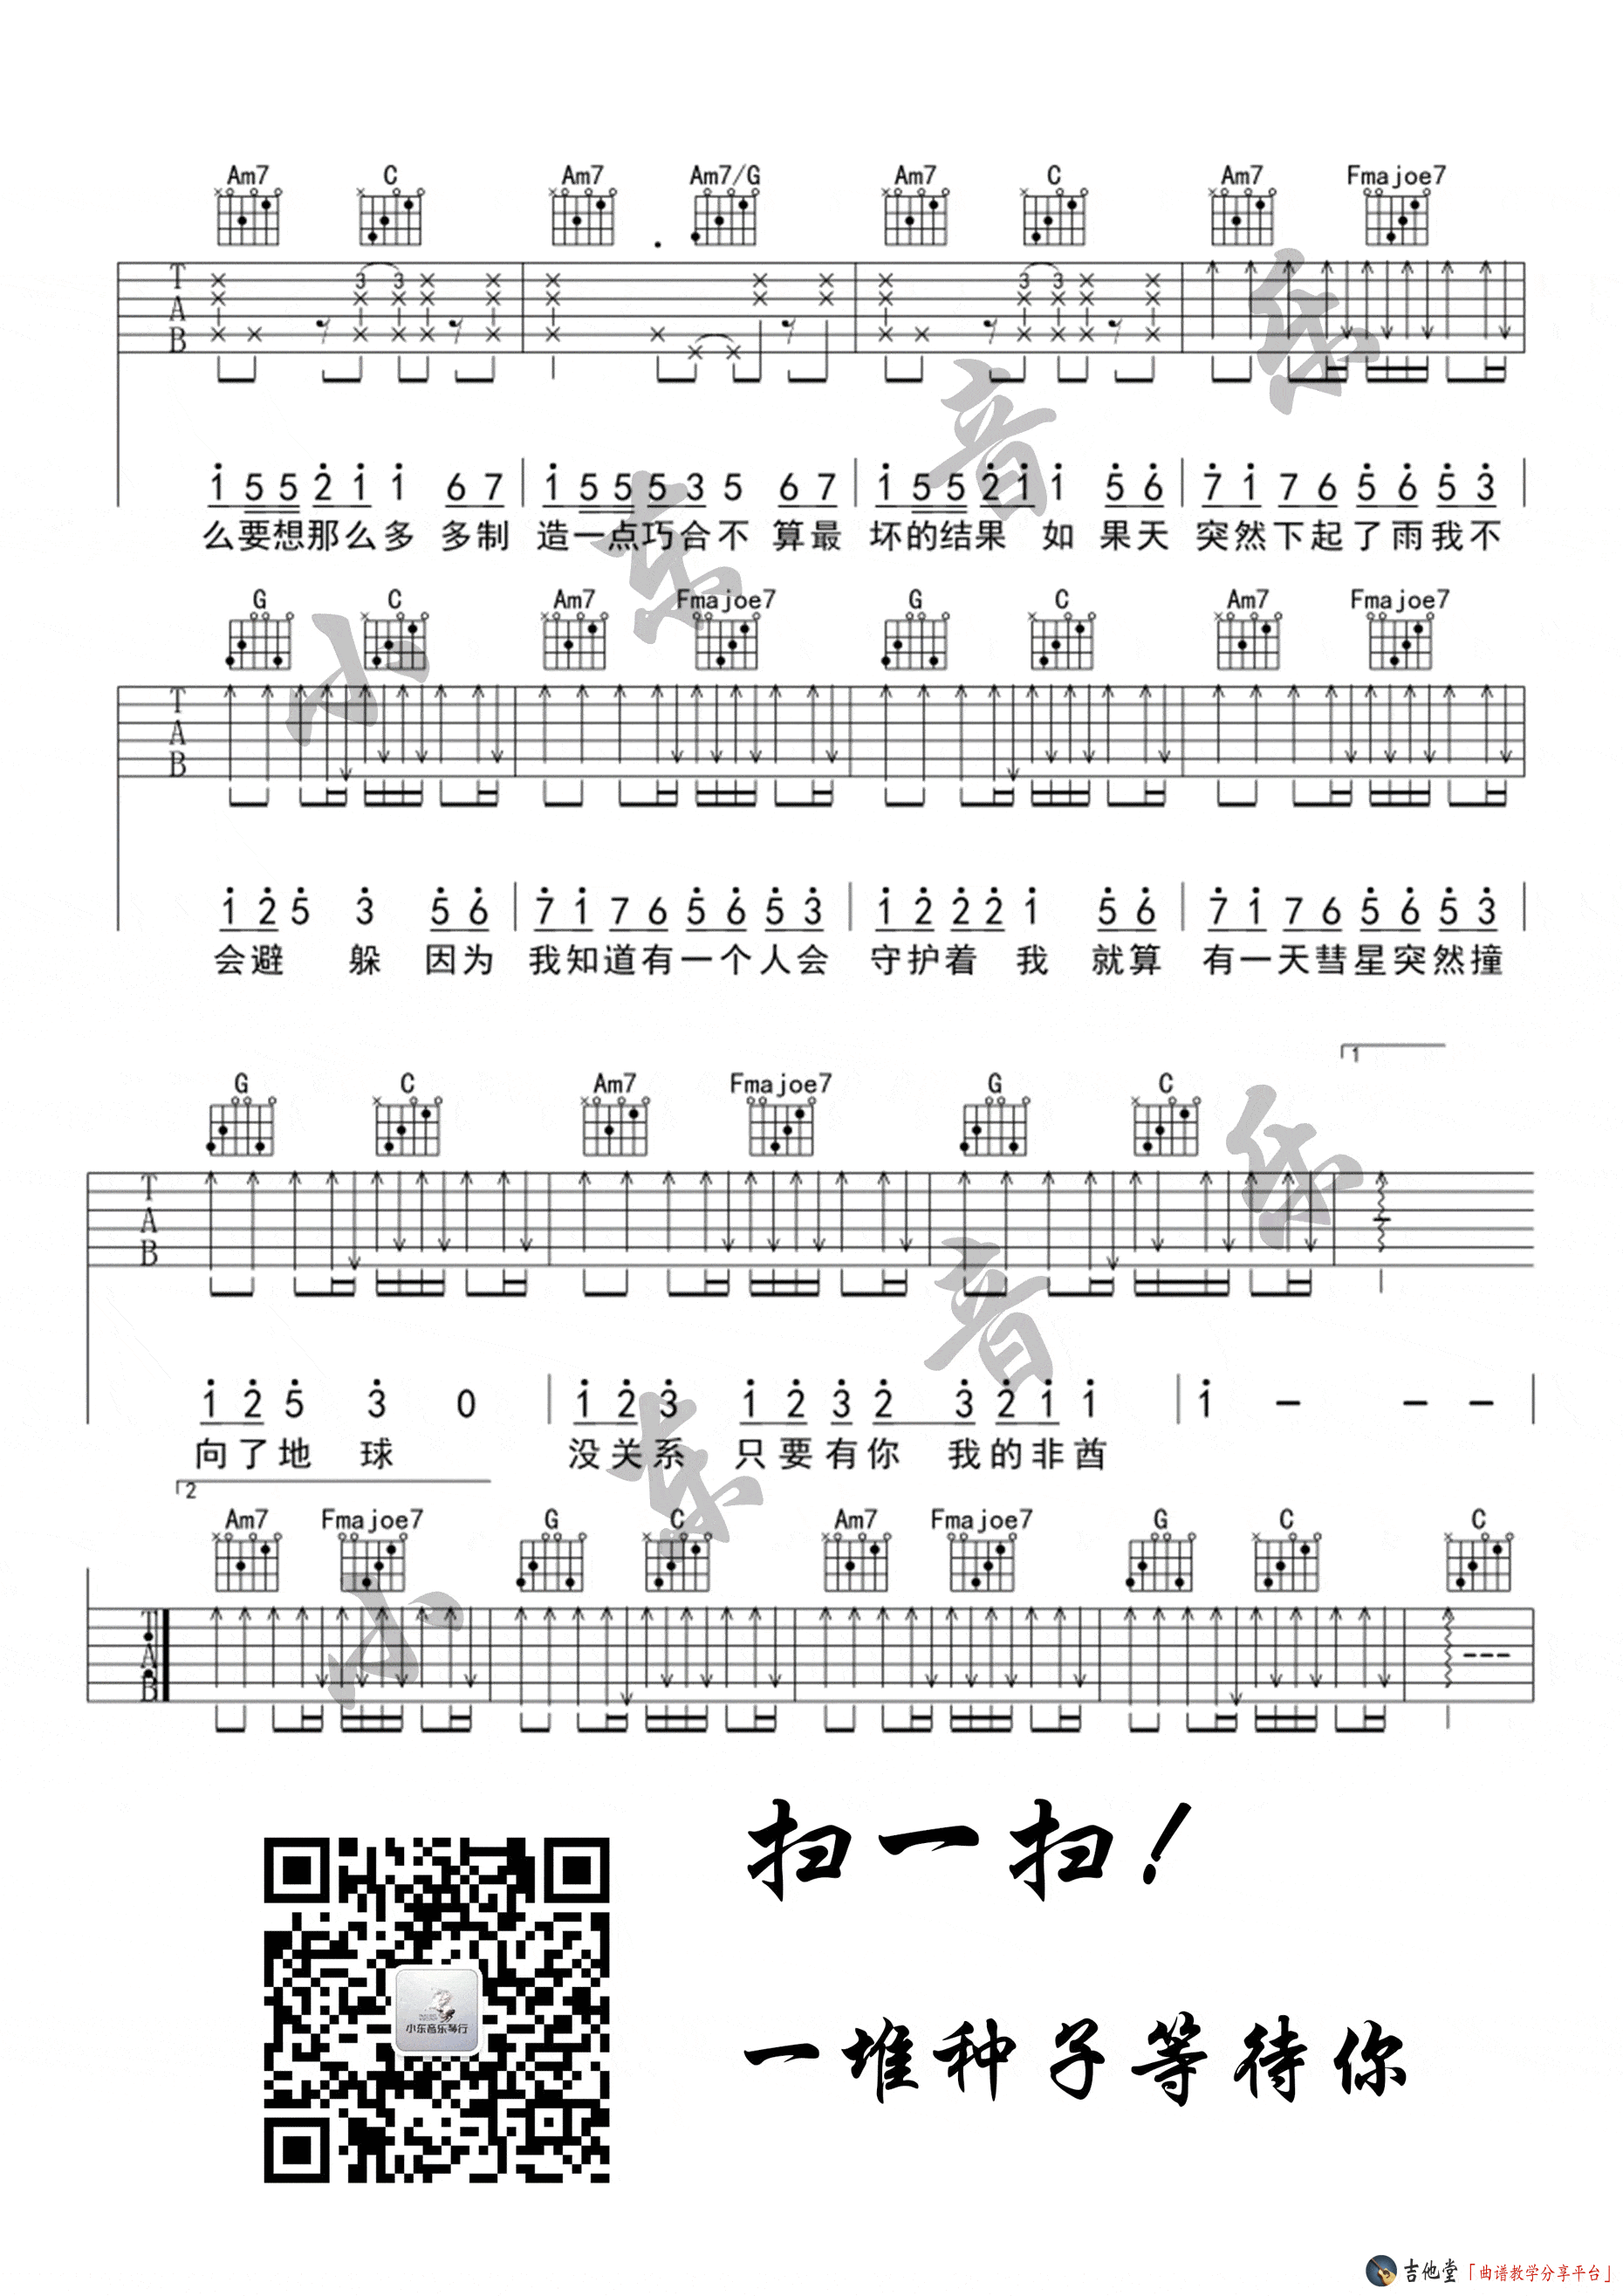 非酋-薛明媛和朱贺五线谱预览1-钢琴谱文件（五线谱、双手简谱、数字谱、Midi、PDF）免费下载